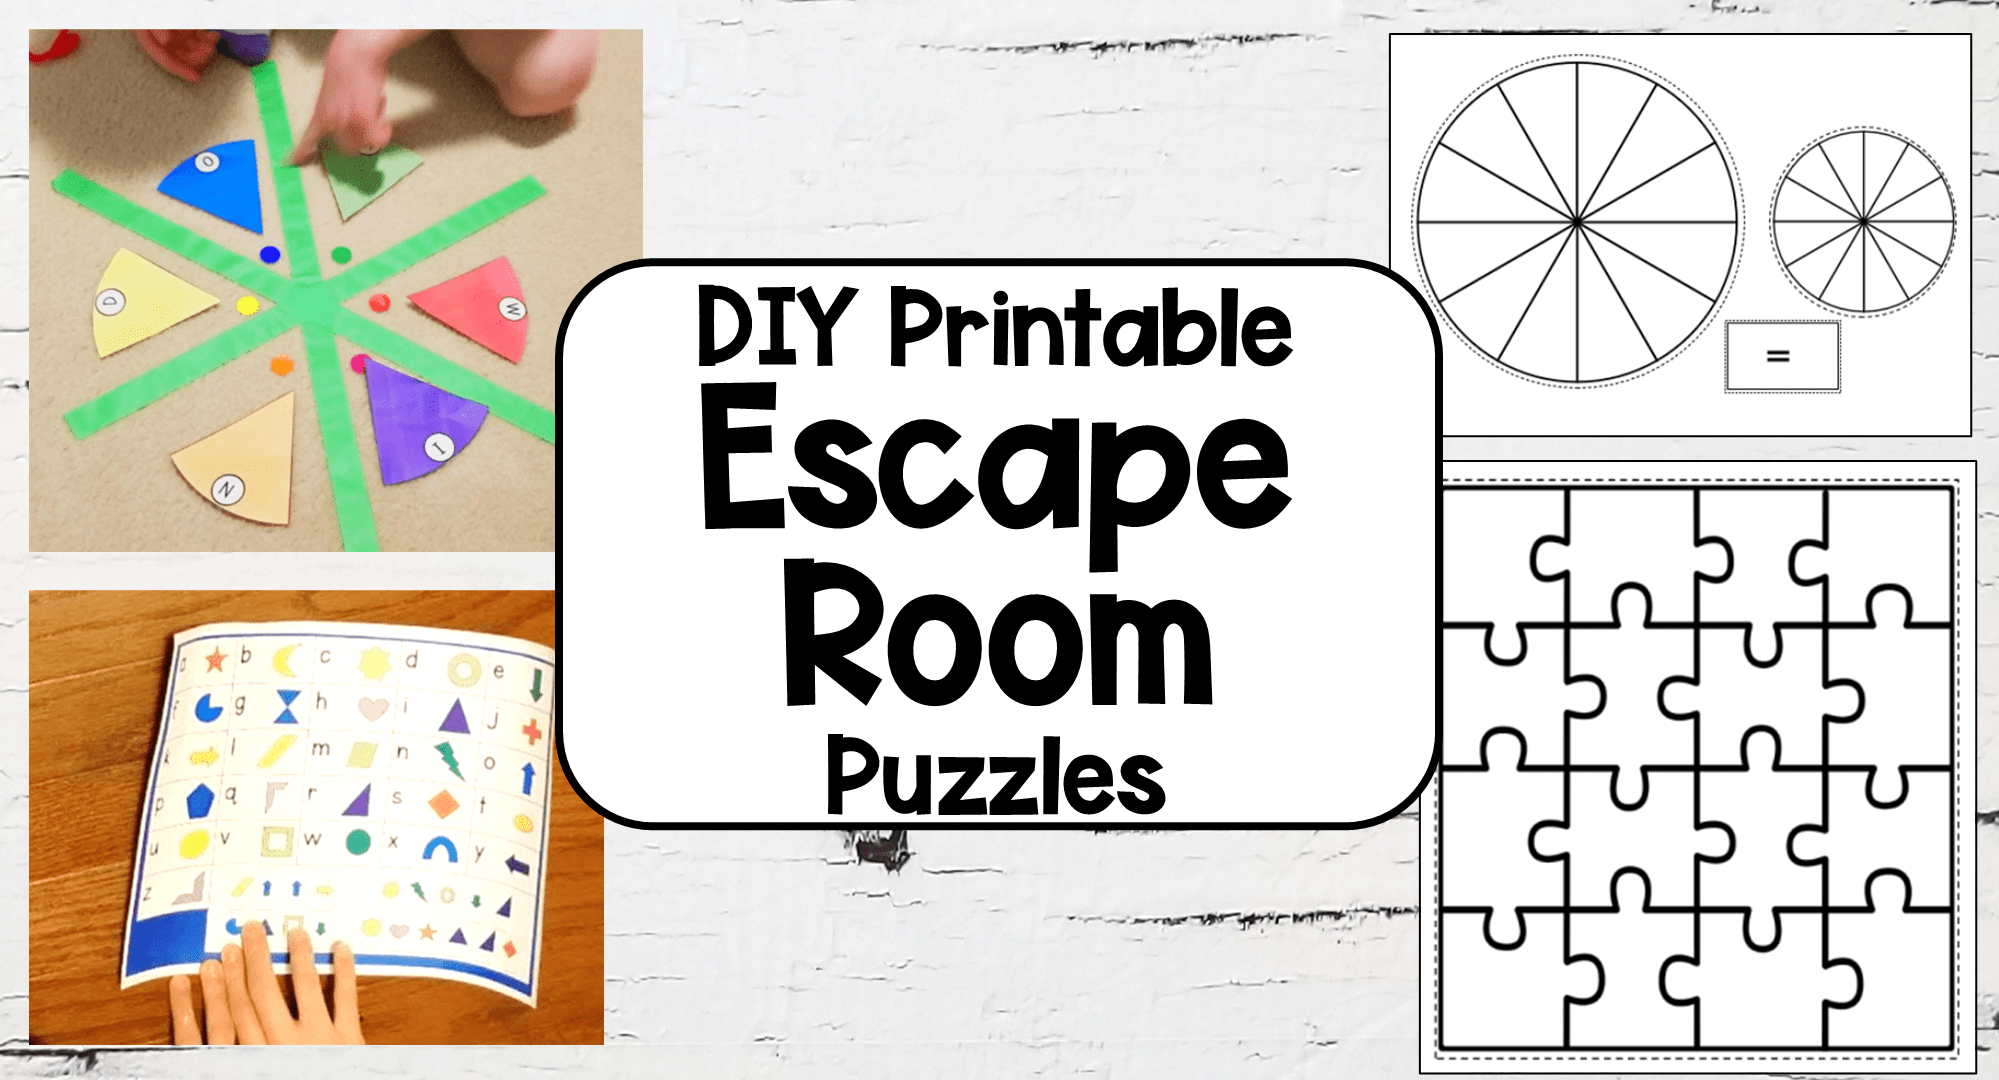 DIY printable escape room puzzles: Creative ideas for making engaging puzzles for an escape room experience